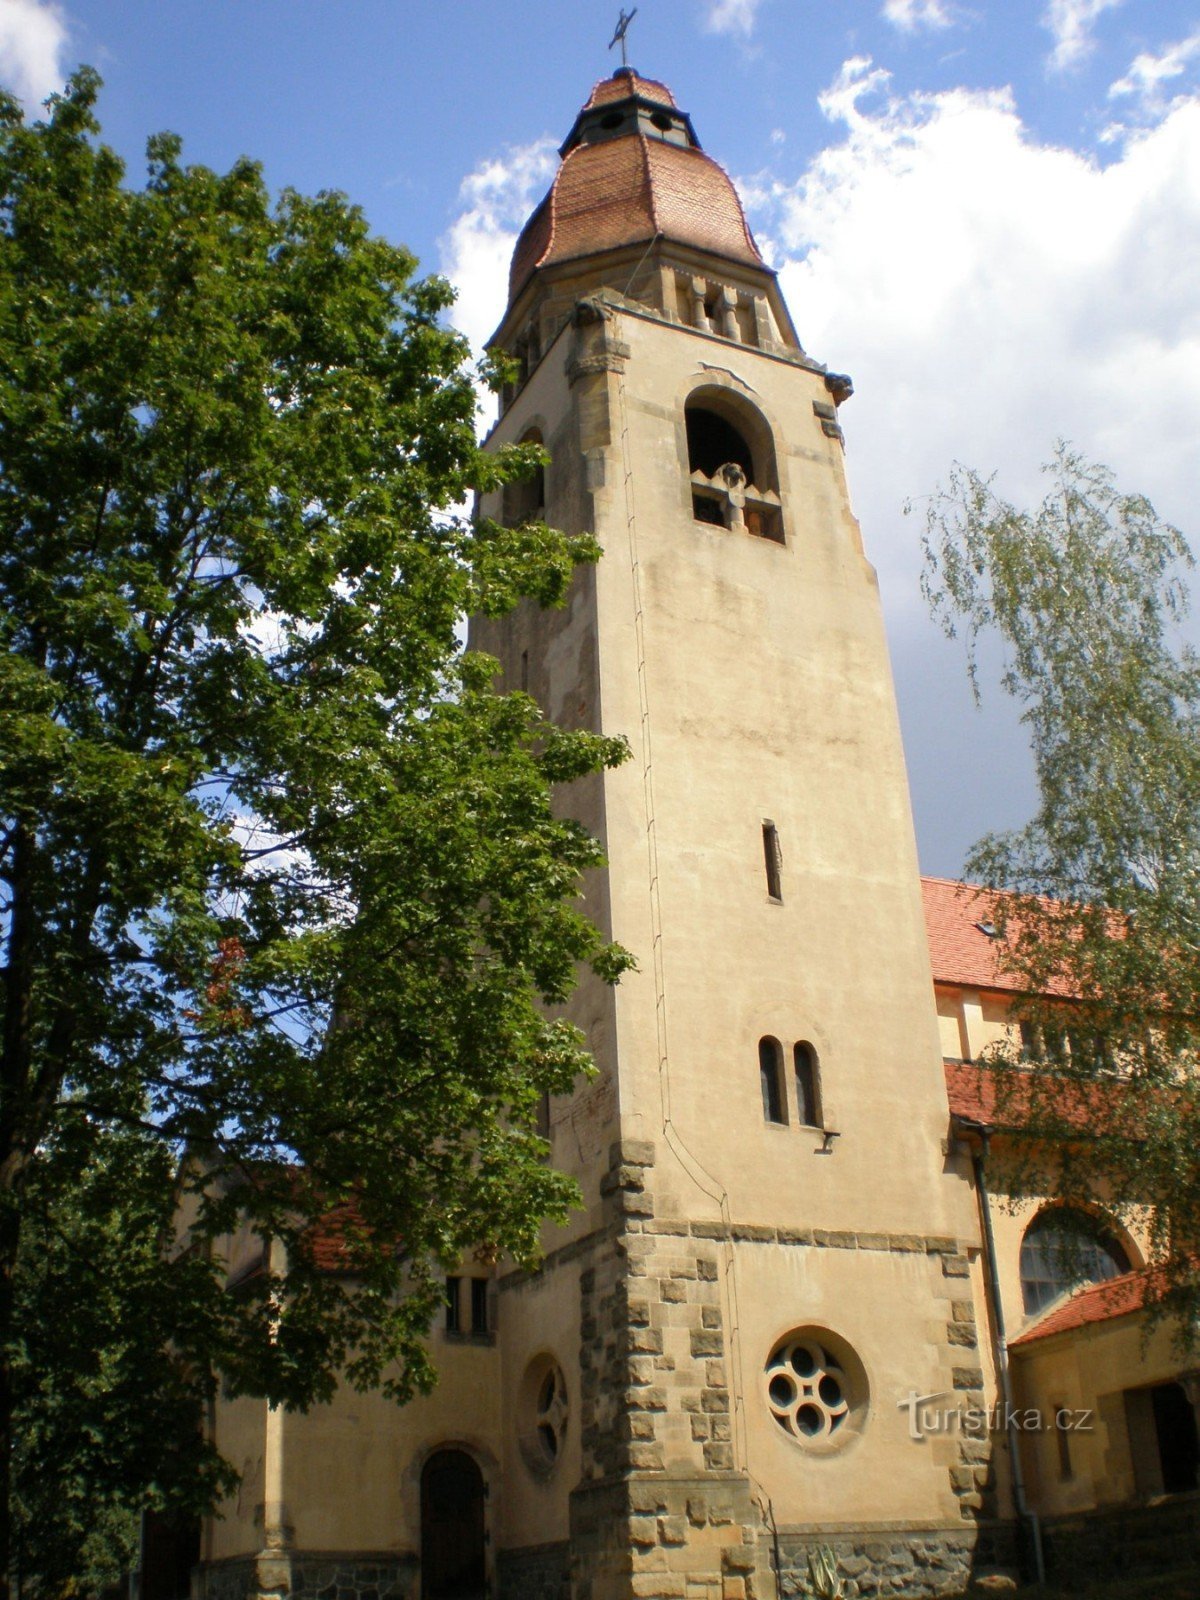 Štěchovice - église de St. Jan Nepomucký